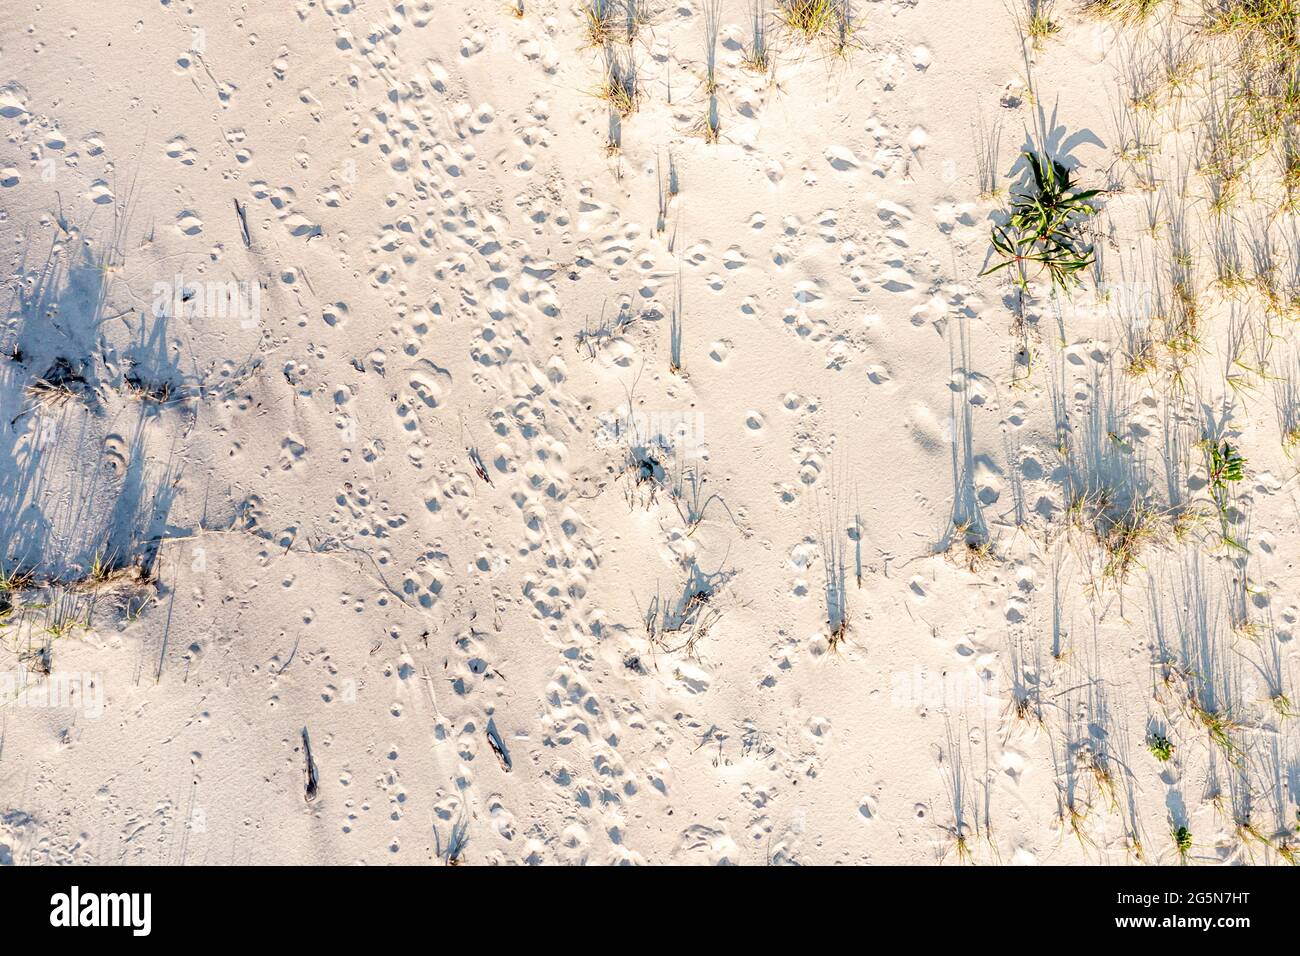 vista aerea delle marcature casuali in una spiaggia dell'oceano Foto Stock